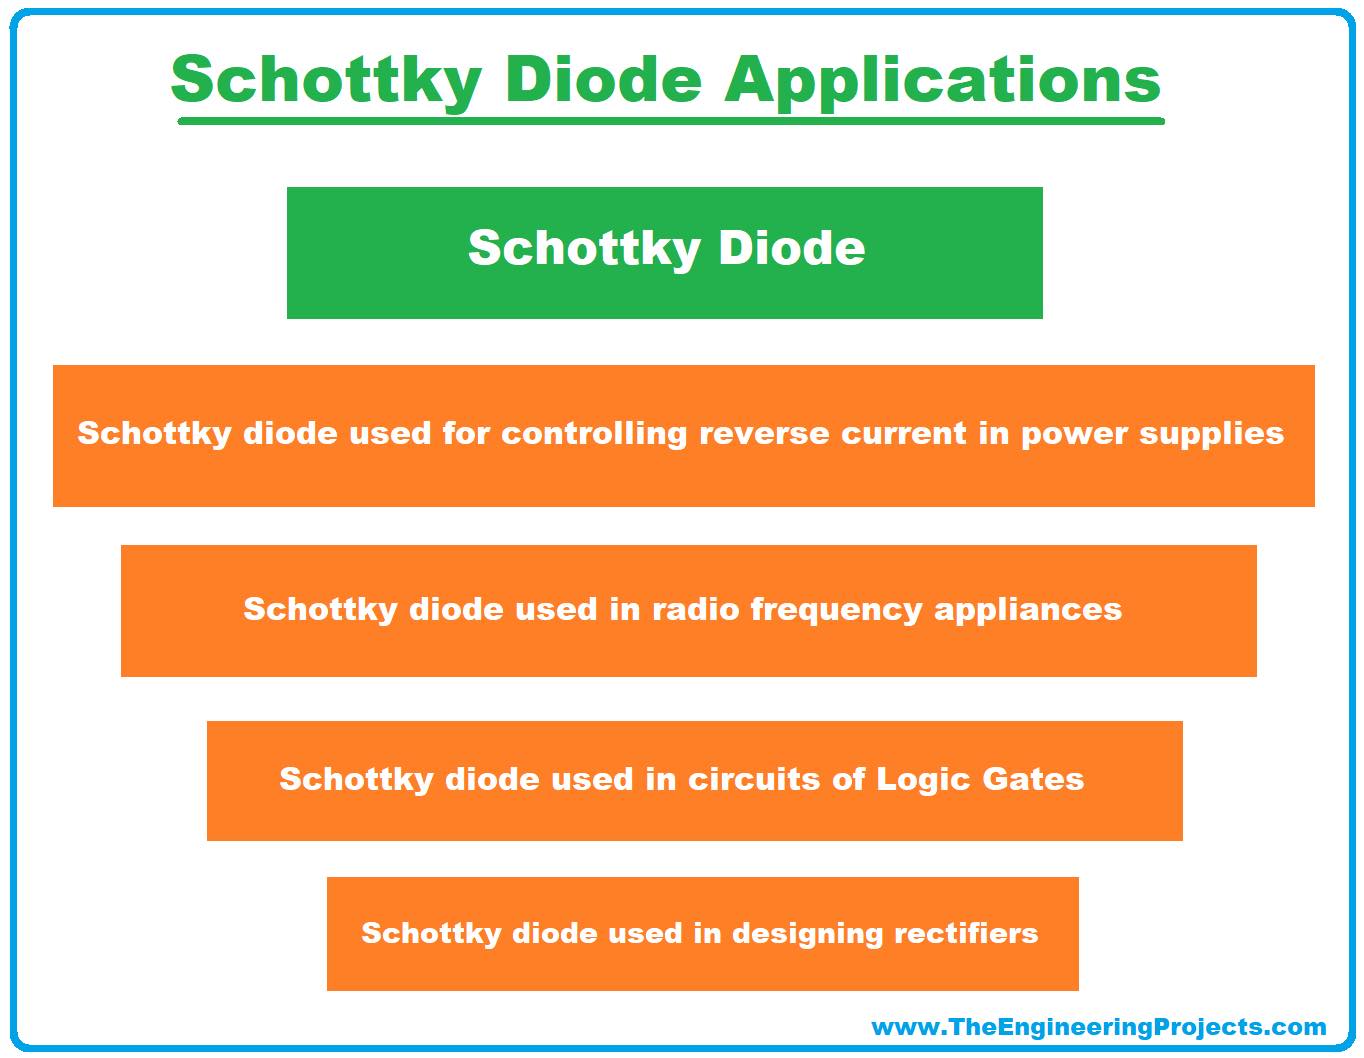 Schottky Diode, Schottky barrier diode, Schottky barrier, Schottky Diode working, Schottky Diode application, applications of Schottky Diode, Schottky Diode advantages, advantages of schottky diode